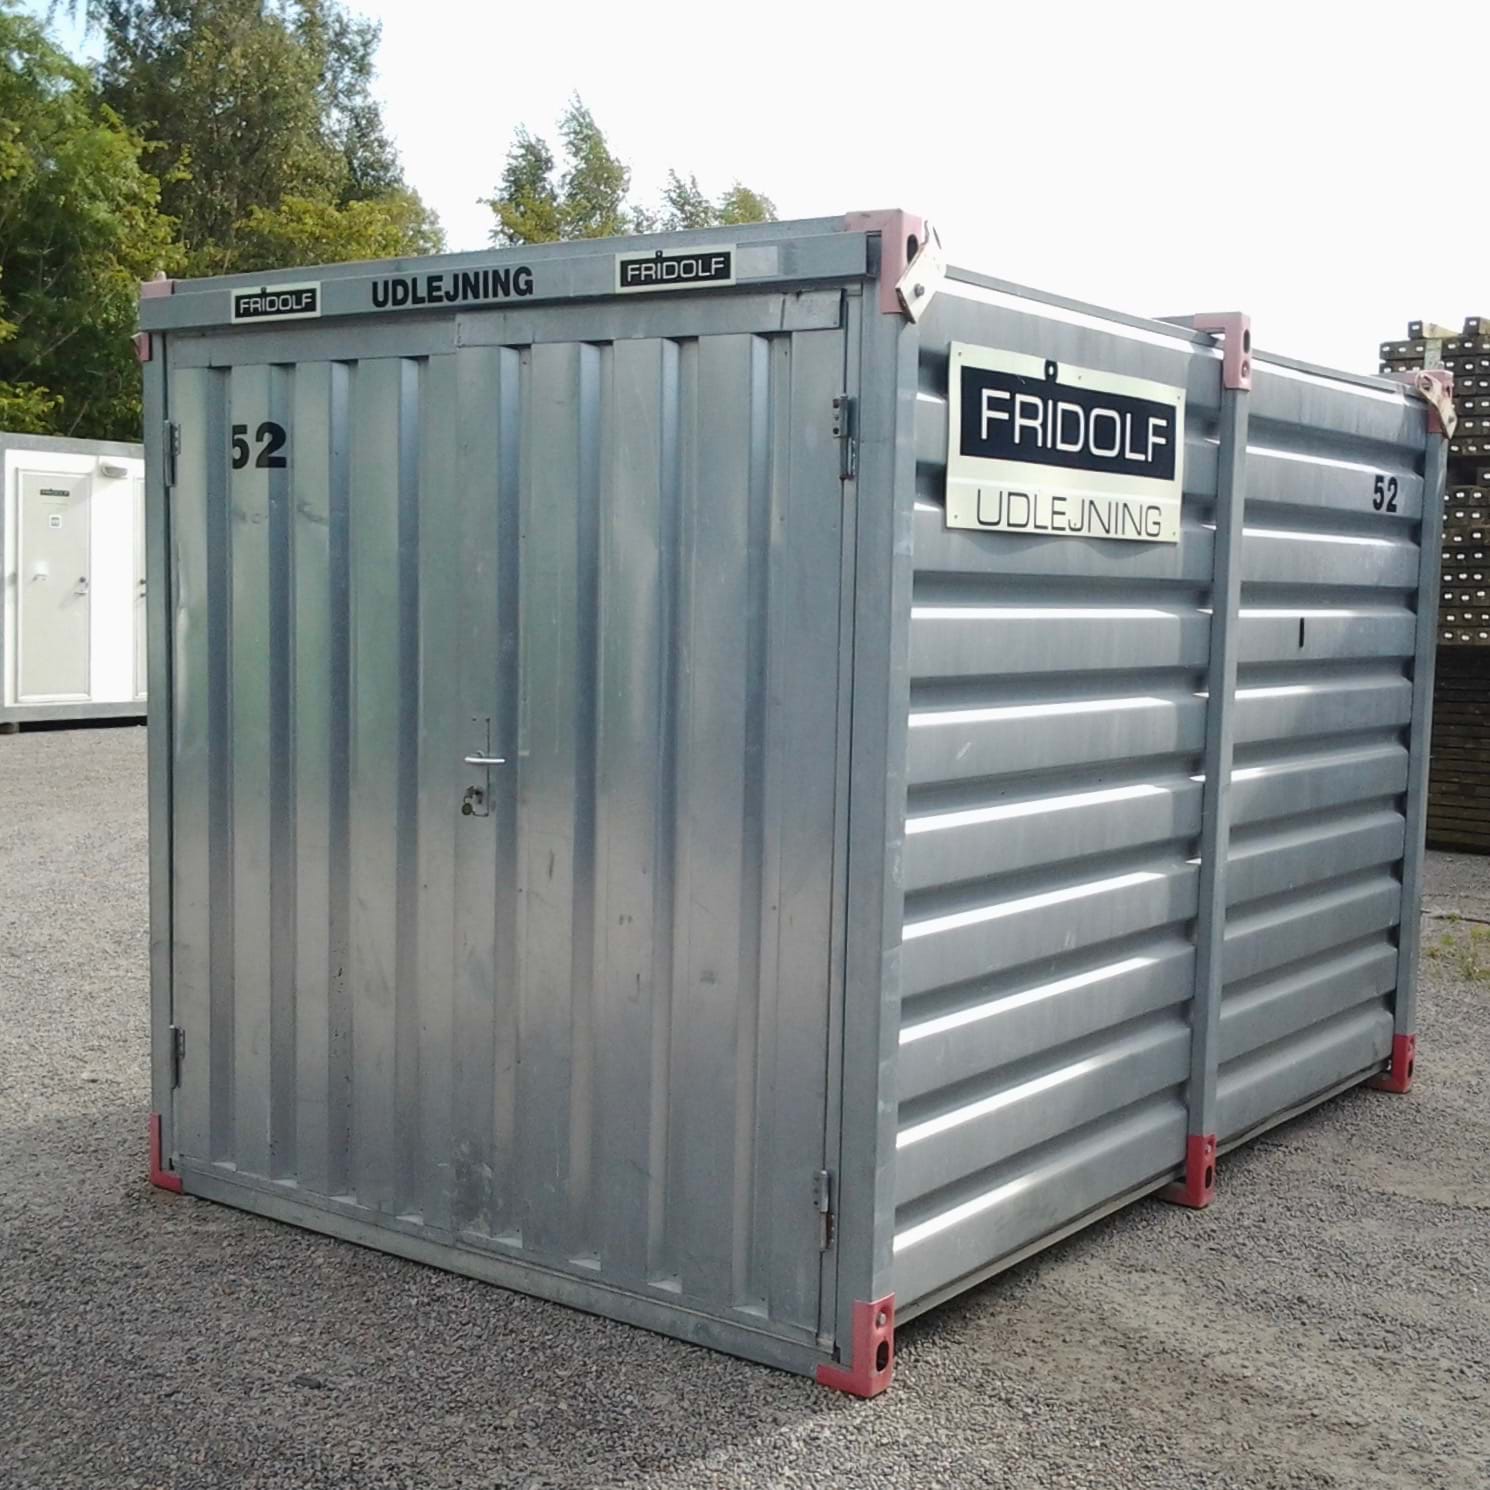 tredobbelt Det er billigt sol Leje af materielcontainer - opbevaringscontainer - på Bornholm - god til  midlertidig opbevaring af ting og sager